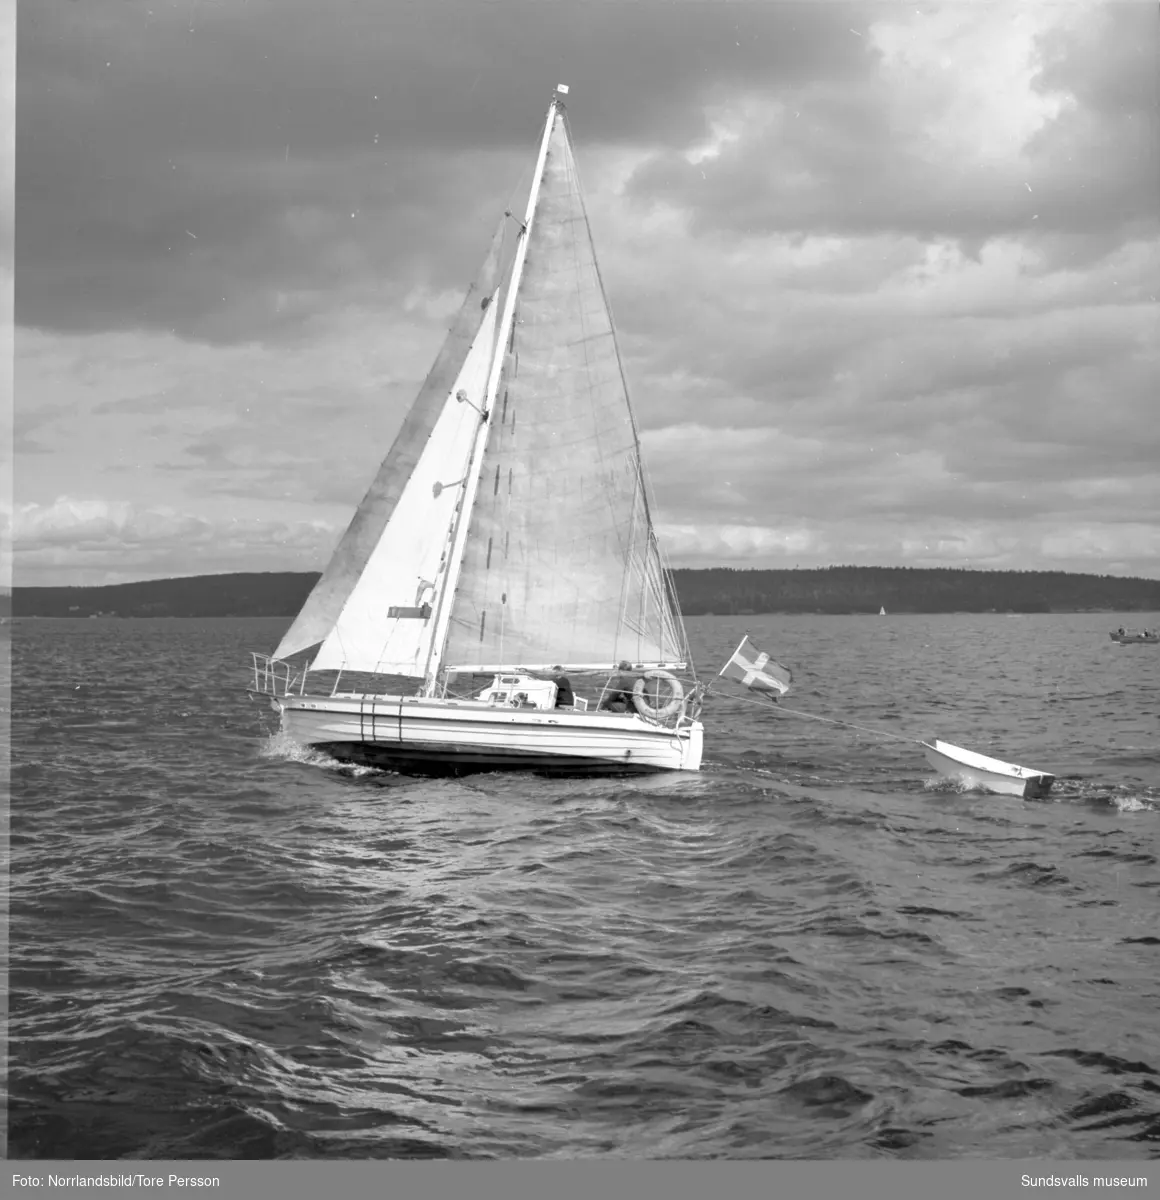 Efter tre års världsomsegling anländer båten Lunkentuss till Vindhem på Alnö med sin besättning Gunnar Dahlgren och Dag Ekholm.